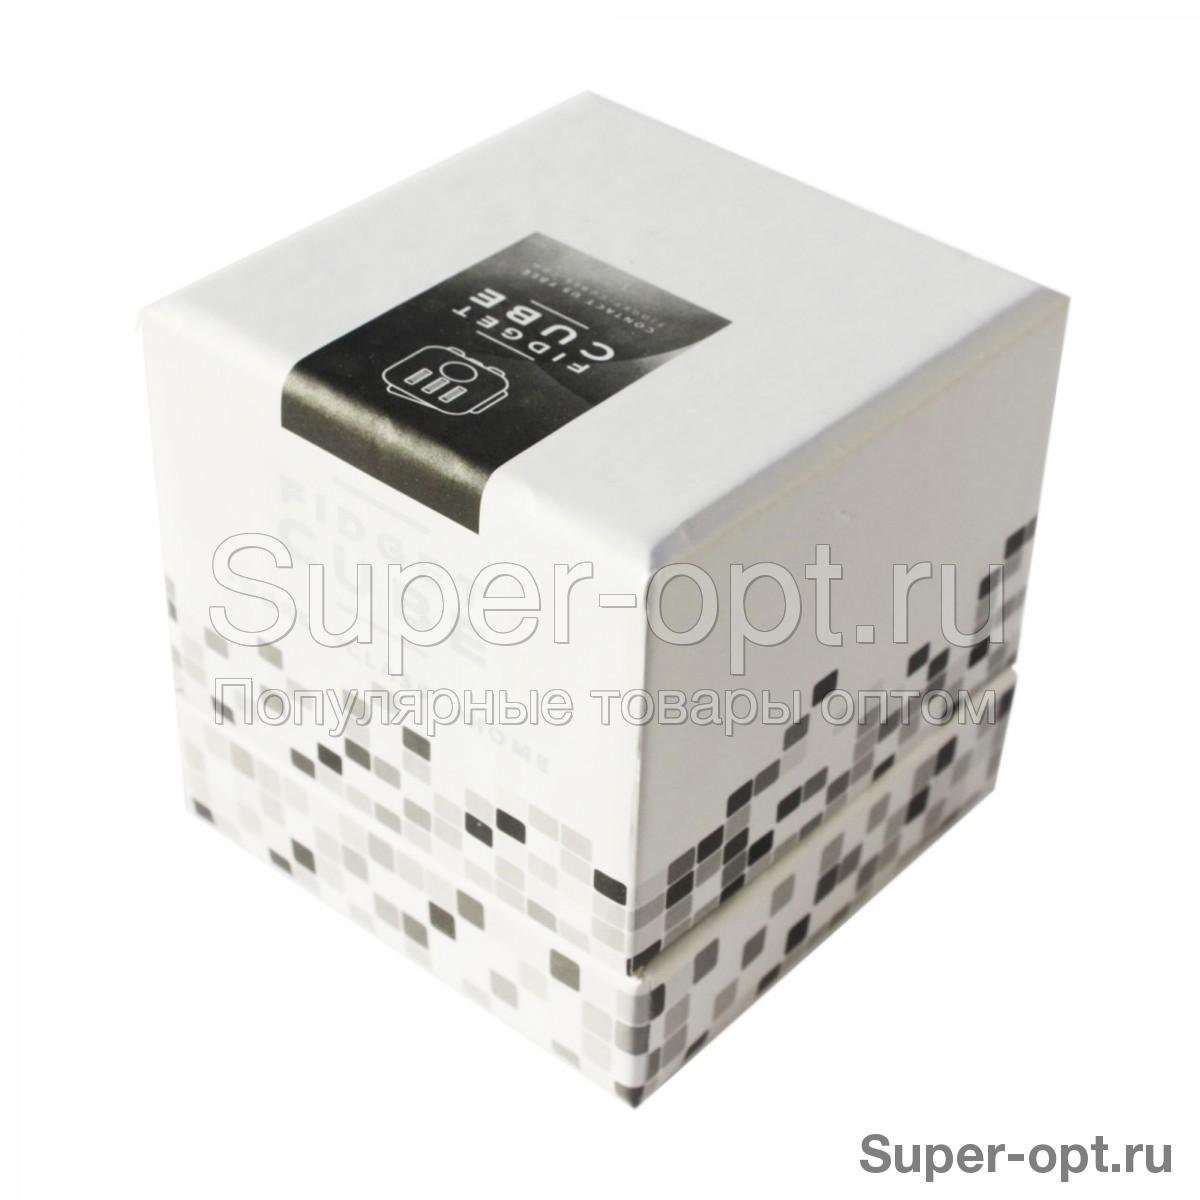 Оригинальный антистрессовый кубик Fidget Cube